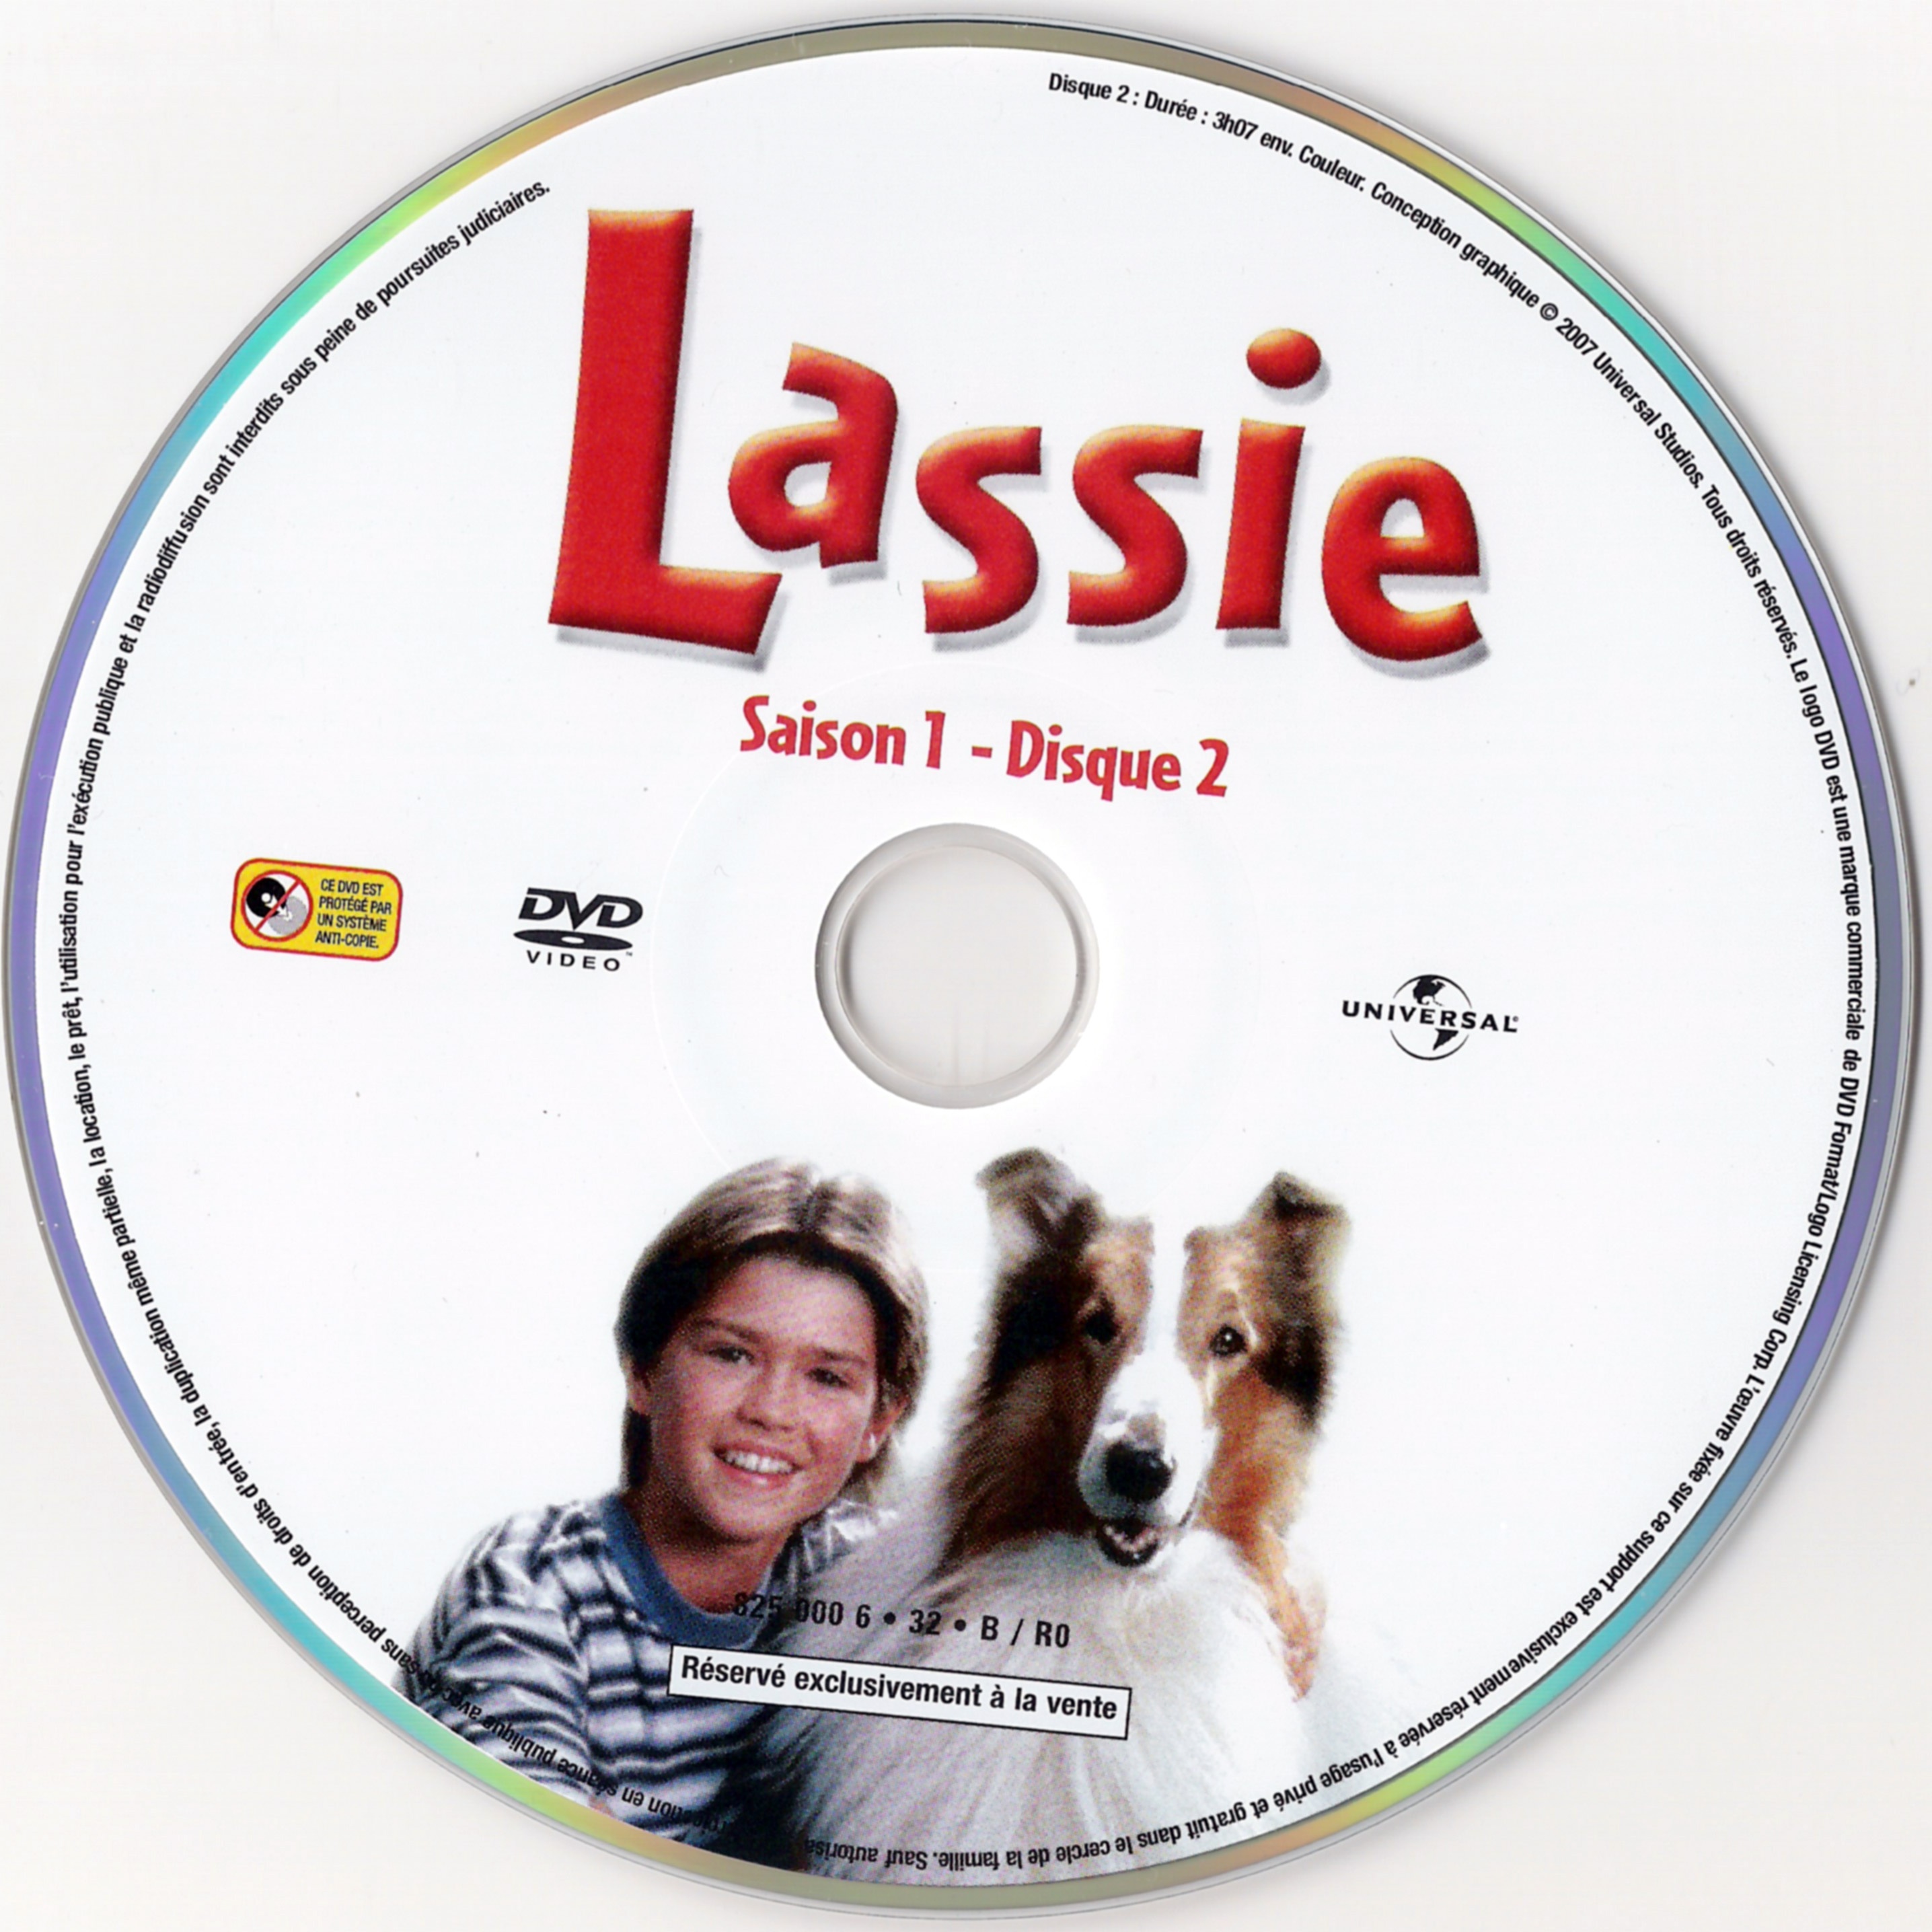 Lassie Saison 1 DISC 2